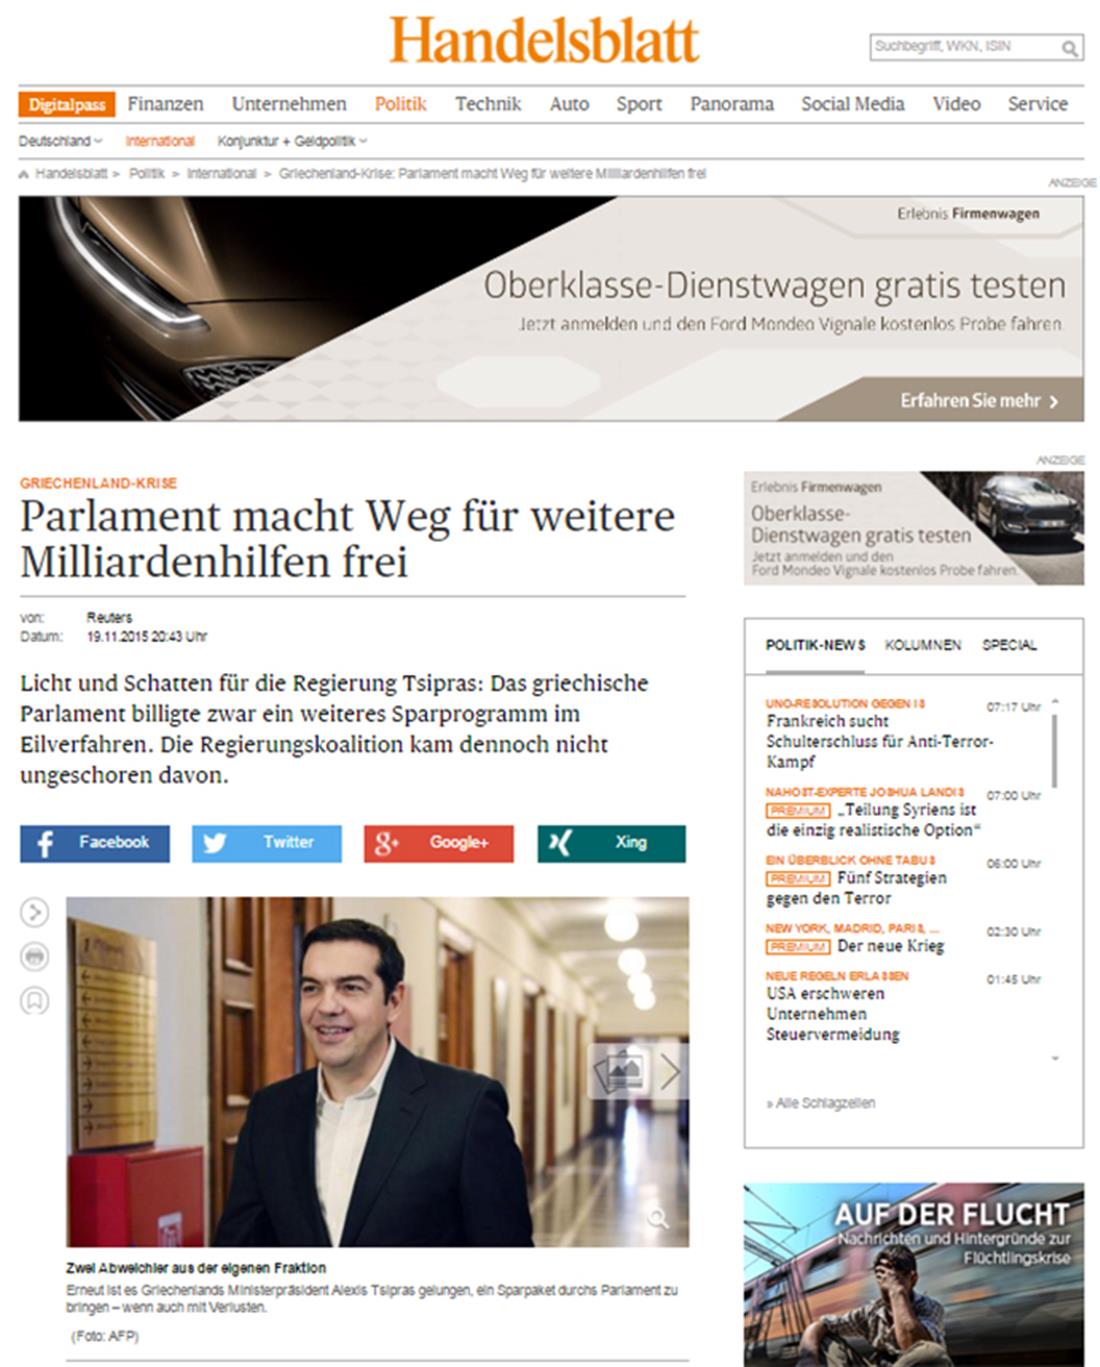 Μνημόνιο - Βουλή - προαπαιτούμενα - ψηφοφορία - Γερμανικός Τύπος